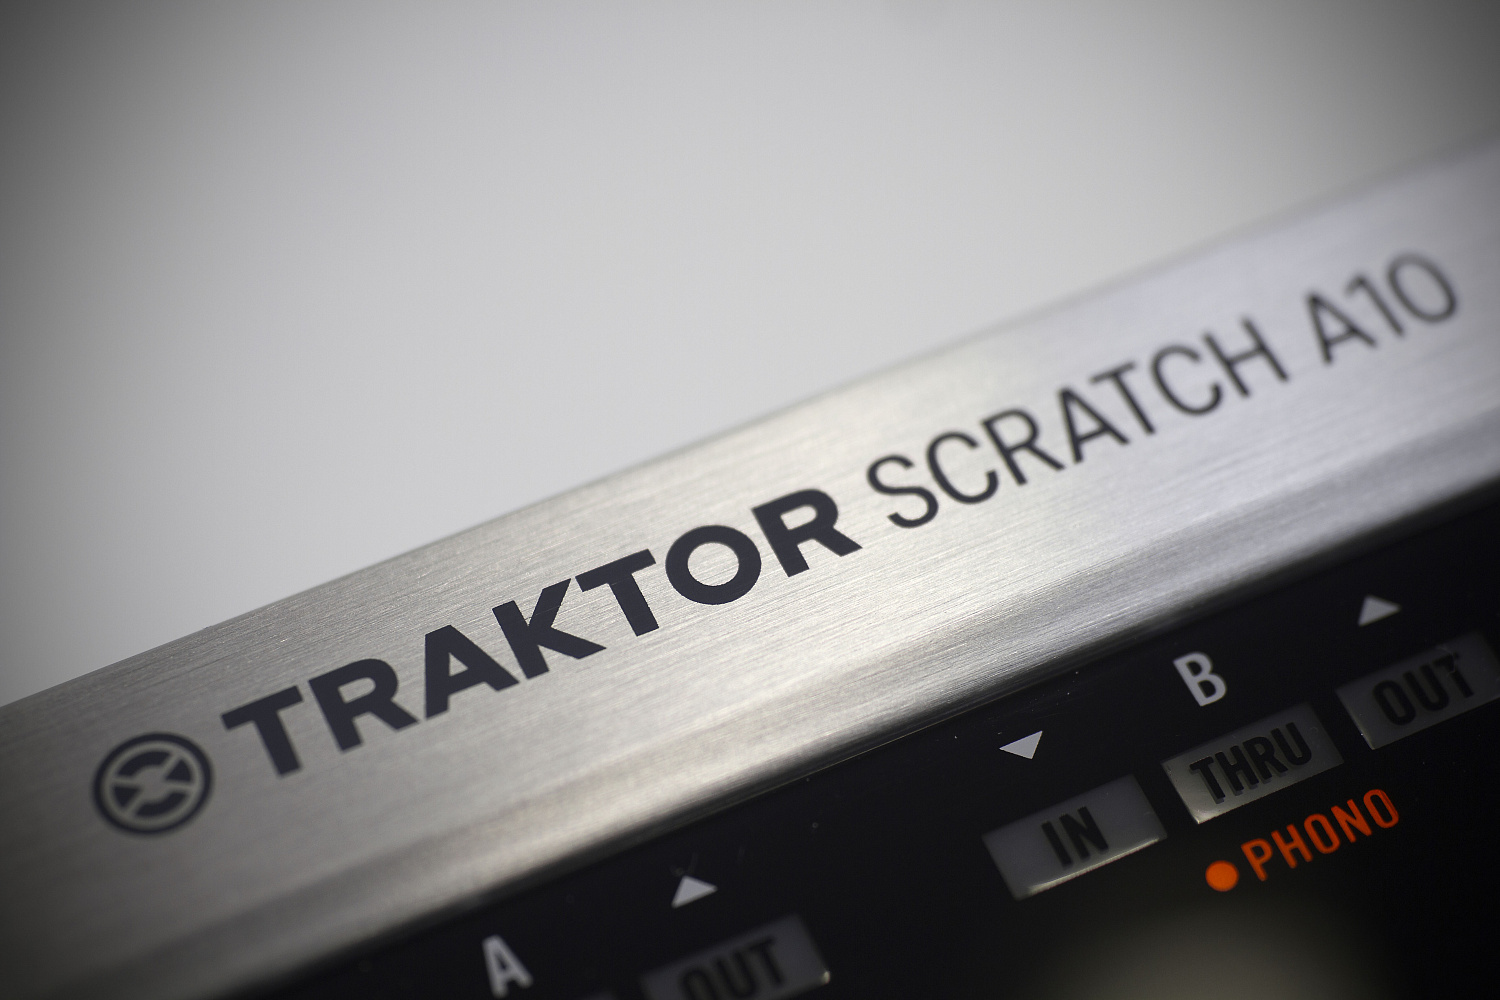 NI Traktor Scratch A10 Mk2 Аудио-интерфейс